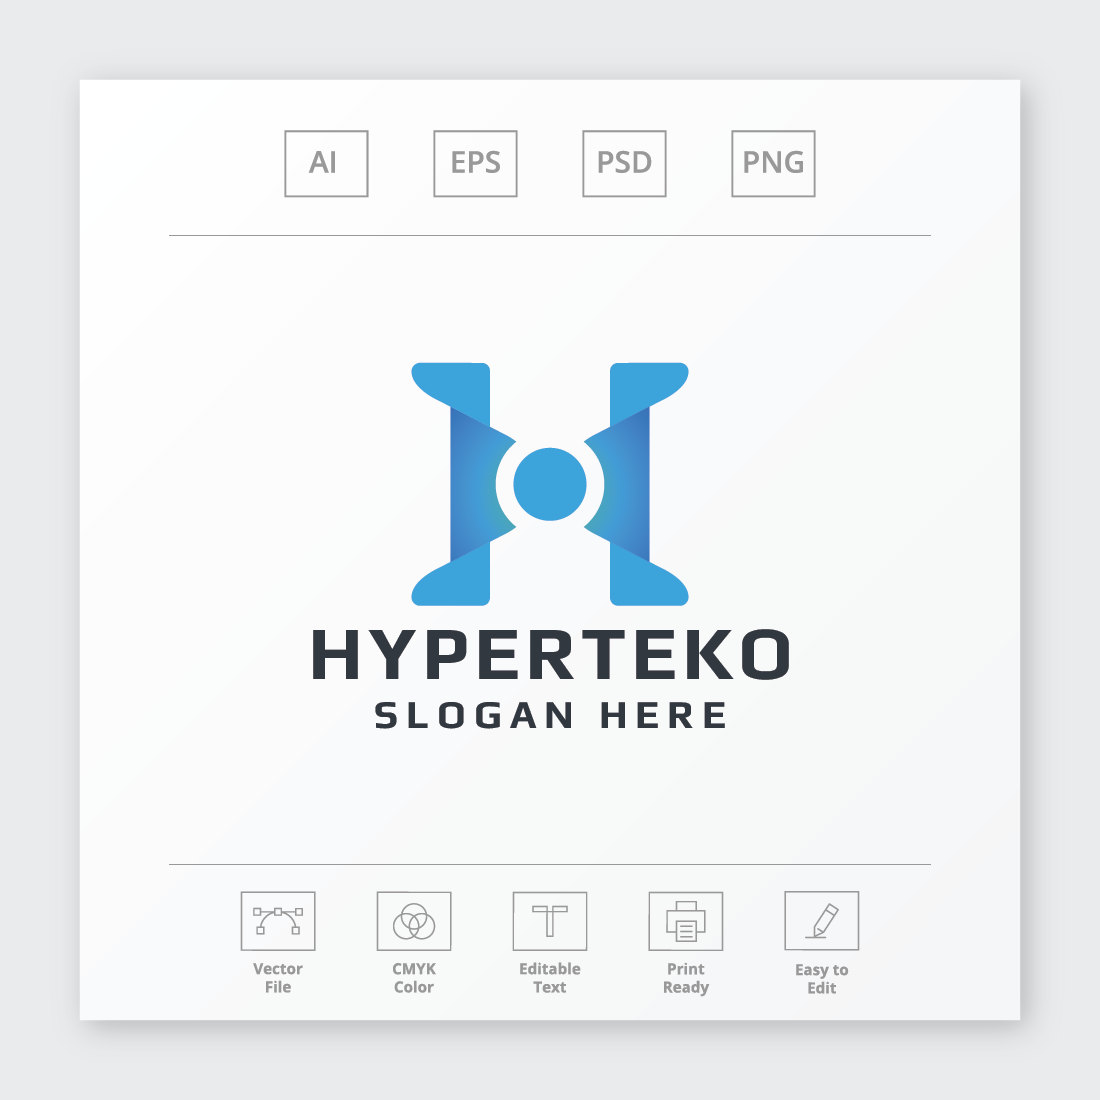 Hyperteko Letter H Logo cover image.